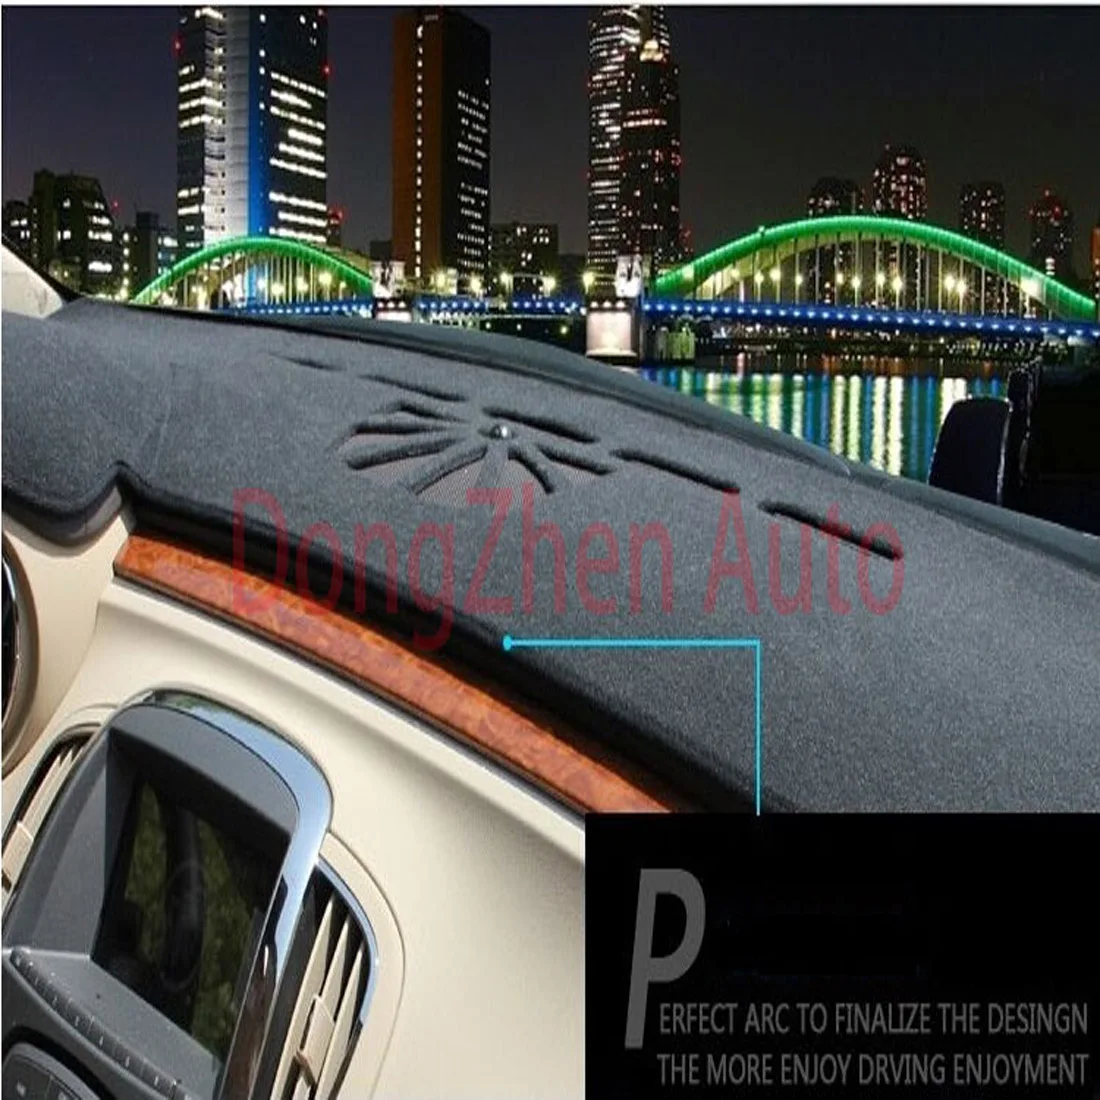 РЖС правая рука Drive приборной панели автомобиля Избегайте свет Pad инструмент крышка платформы стол Коврики ковры для Mitsubishi ASX